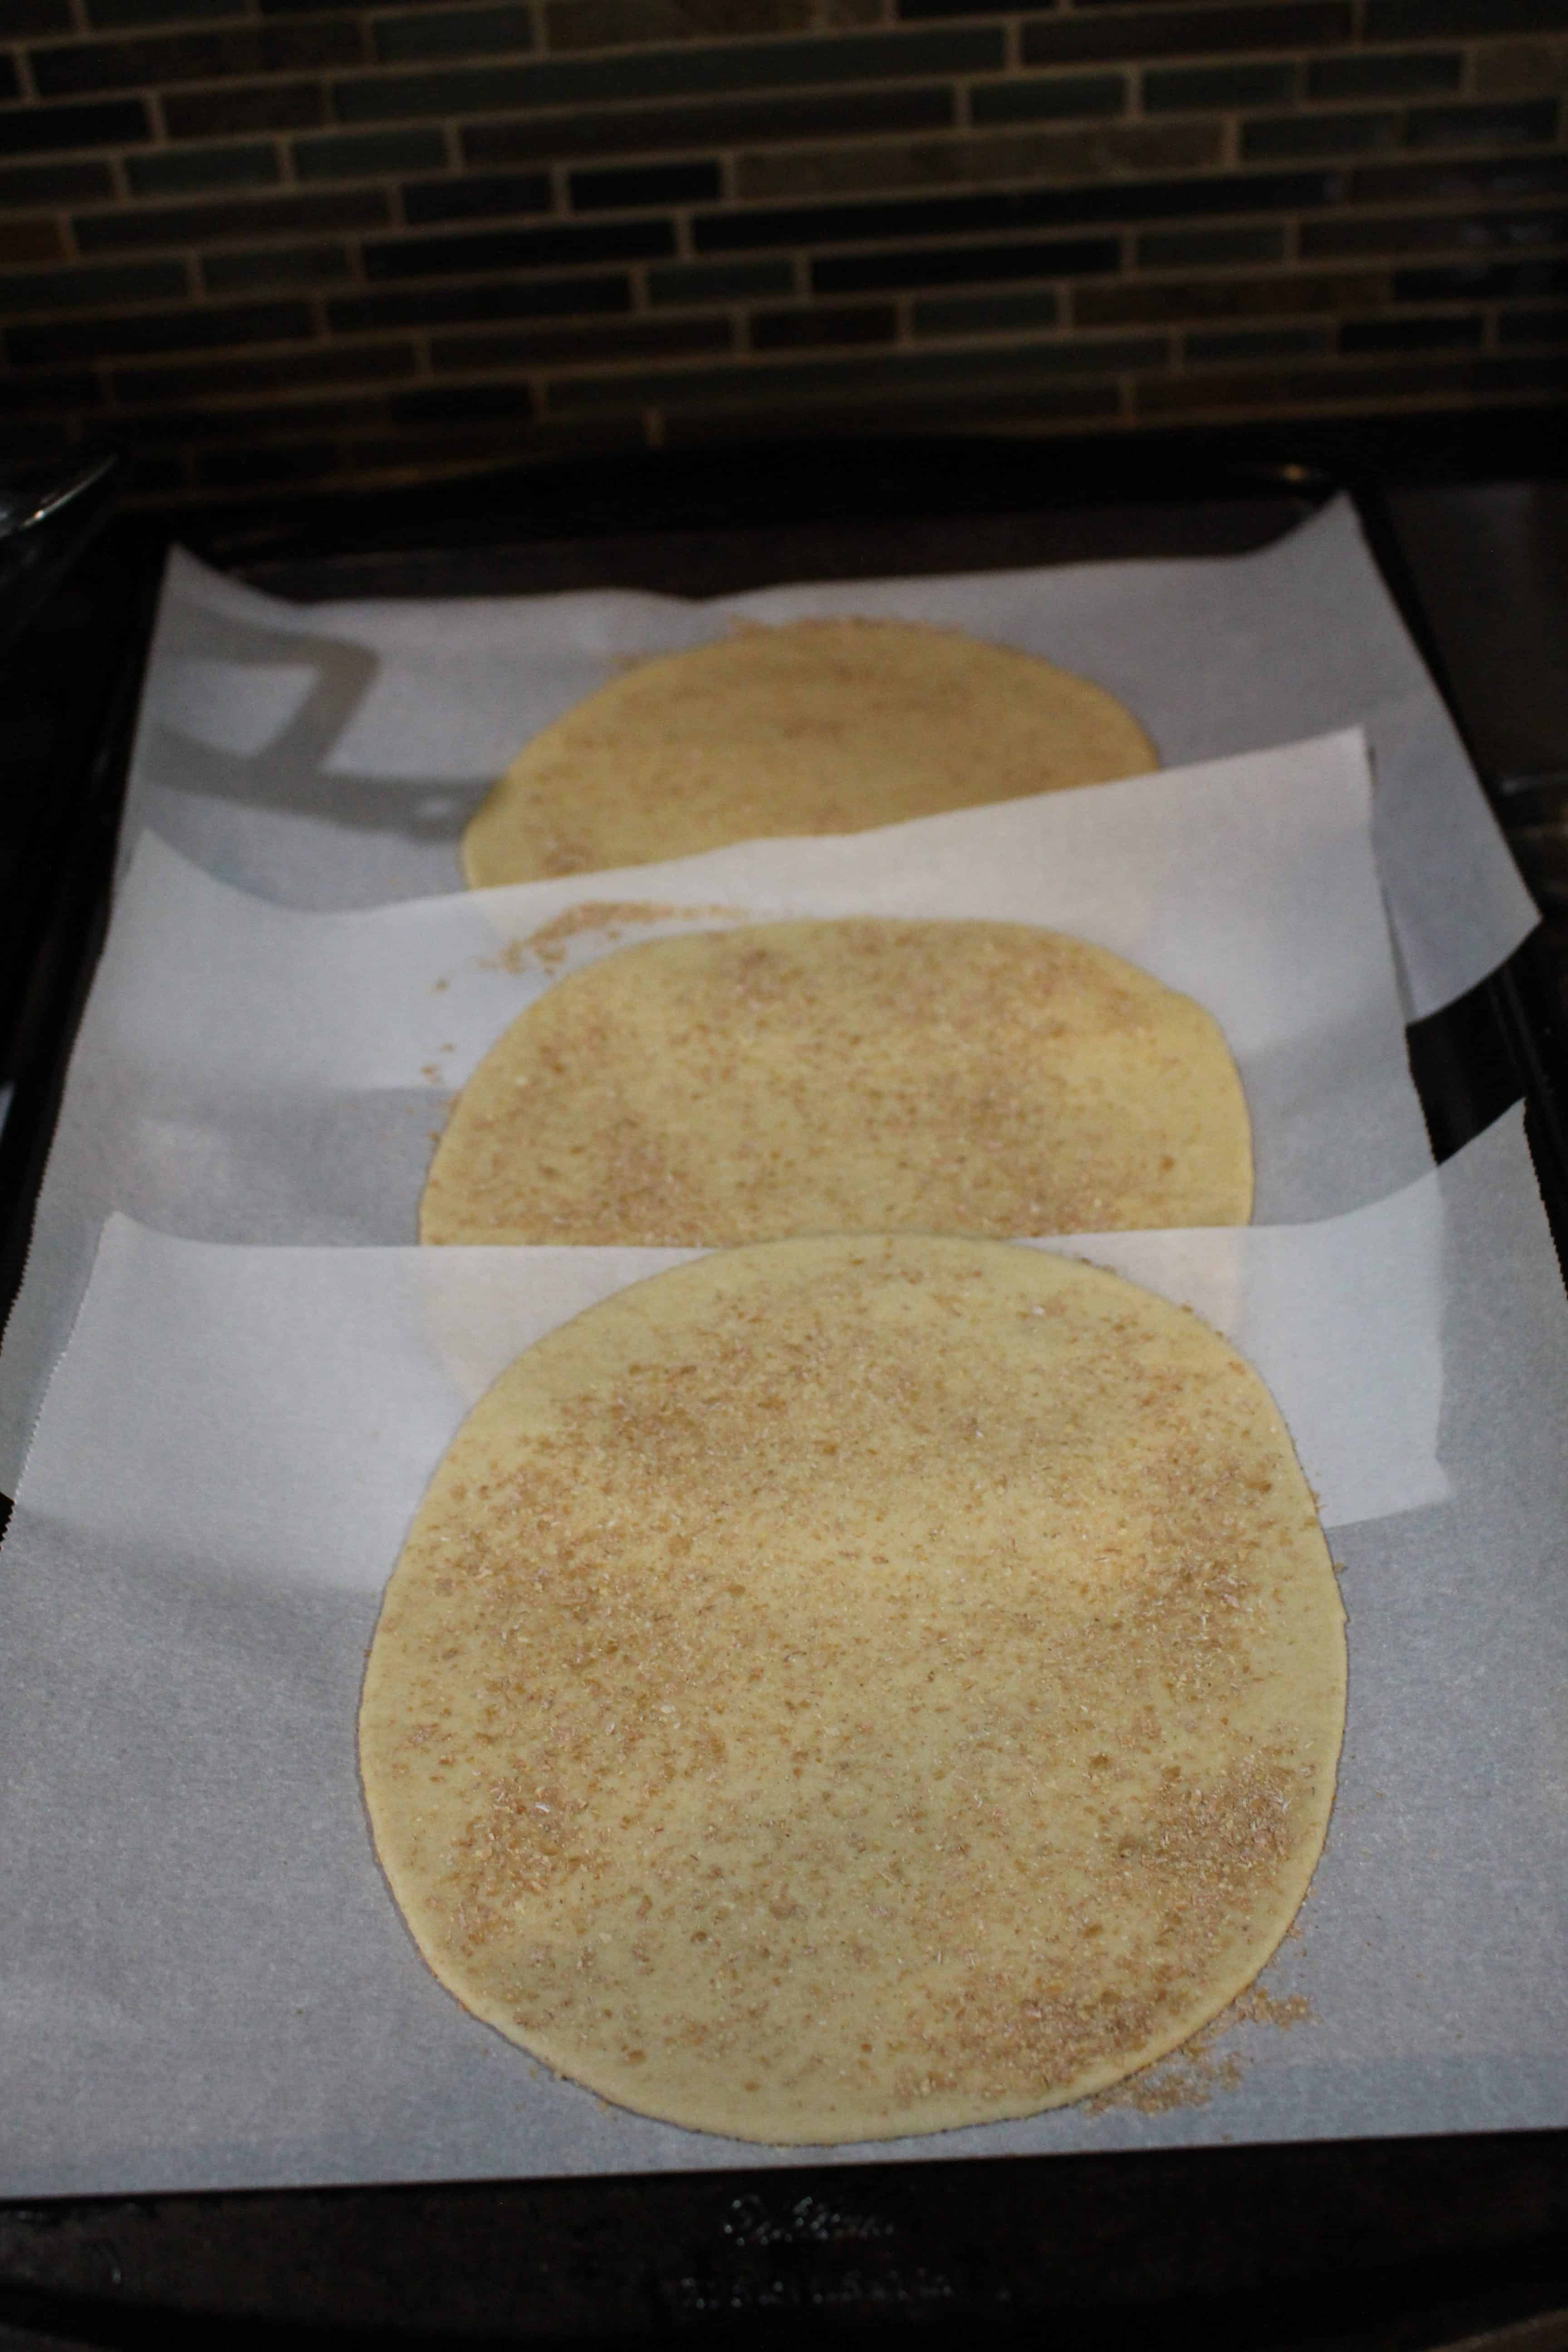 shaped dough on parchment paper